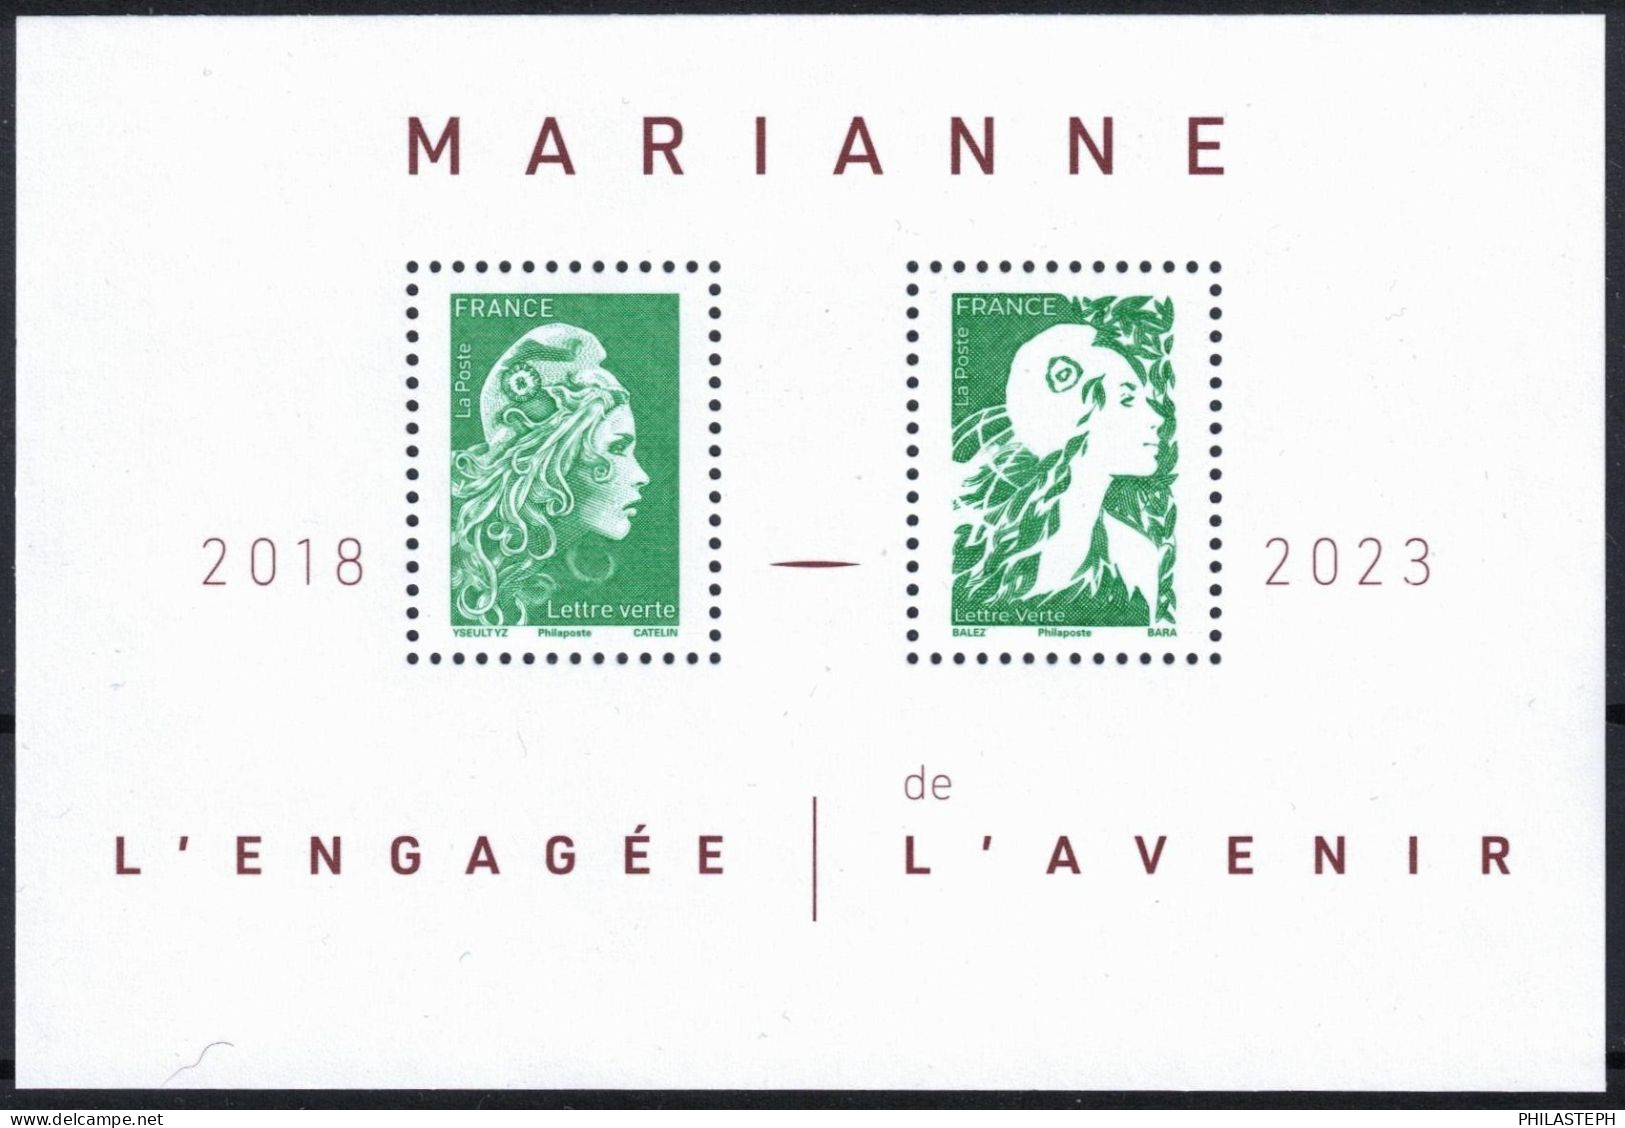 FRANCE 2024 -  Bloc Feuillet  LETTRE VERTE - MARIANNE L'ENGAGEE 2018 / MARIANNE DE L'AVENIR 2023 - BLOC YT 158 Neuf ** - Unused Stamps